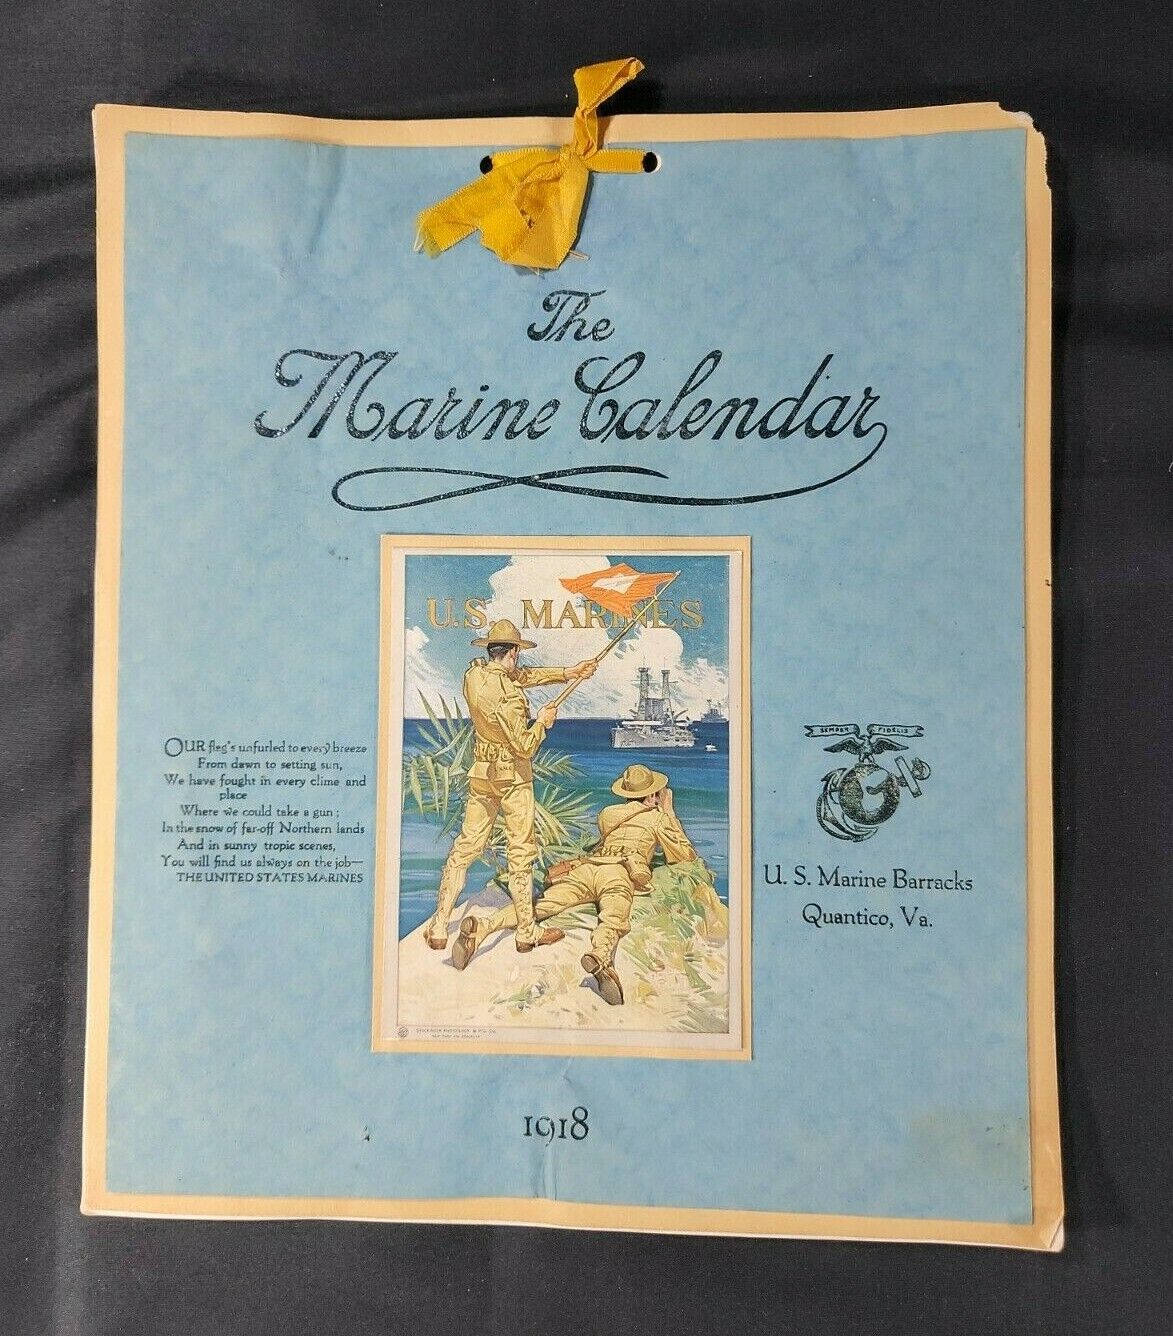 Rare 1918 U.S. Marines Calendar by R.A. Kishpuagh - Unique - Genuine Original